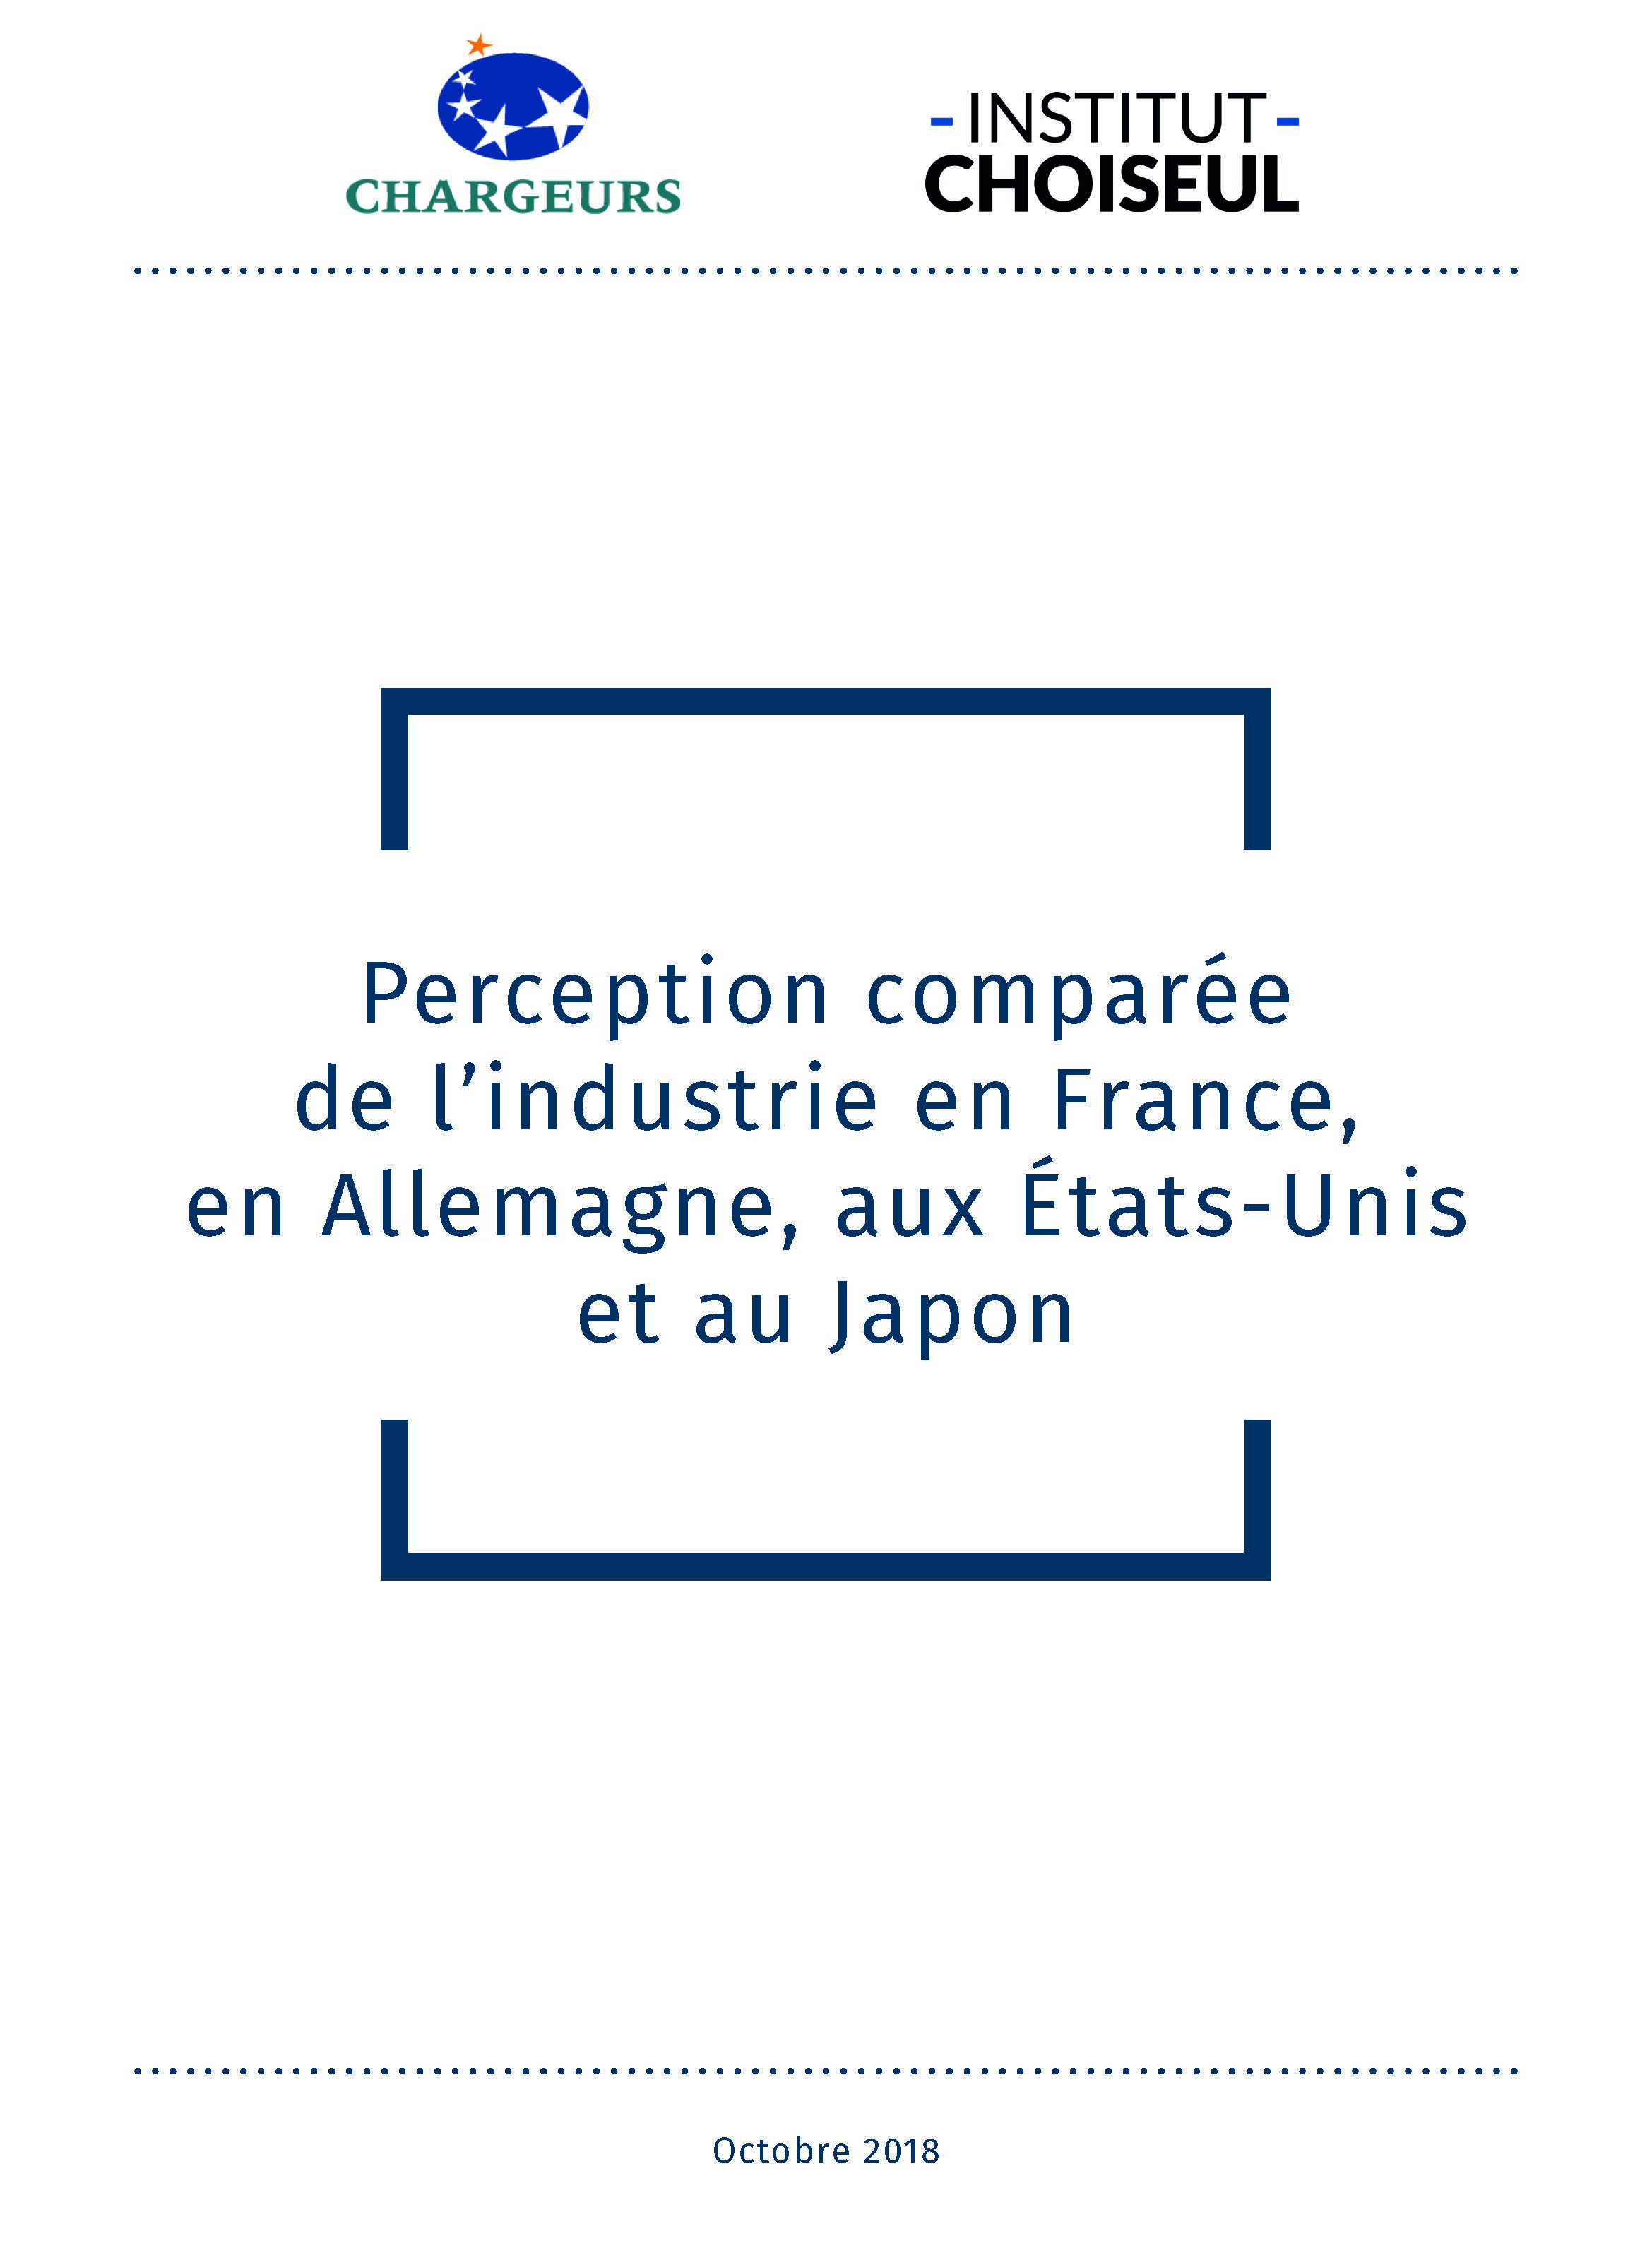 Perception comparée de l’industrie en France, Allemagne, États-Unis et au Japon.